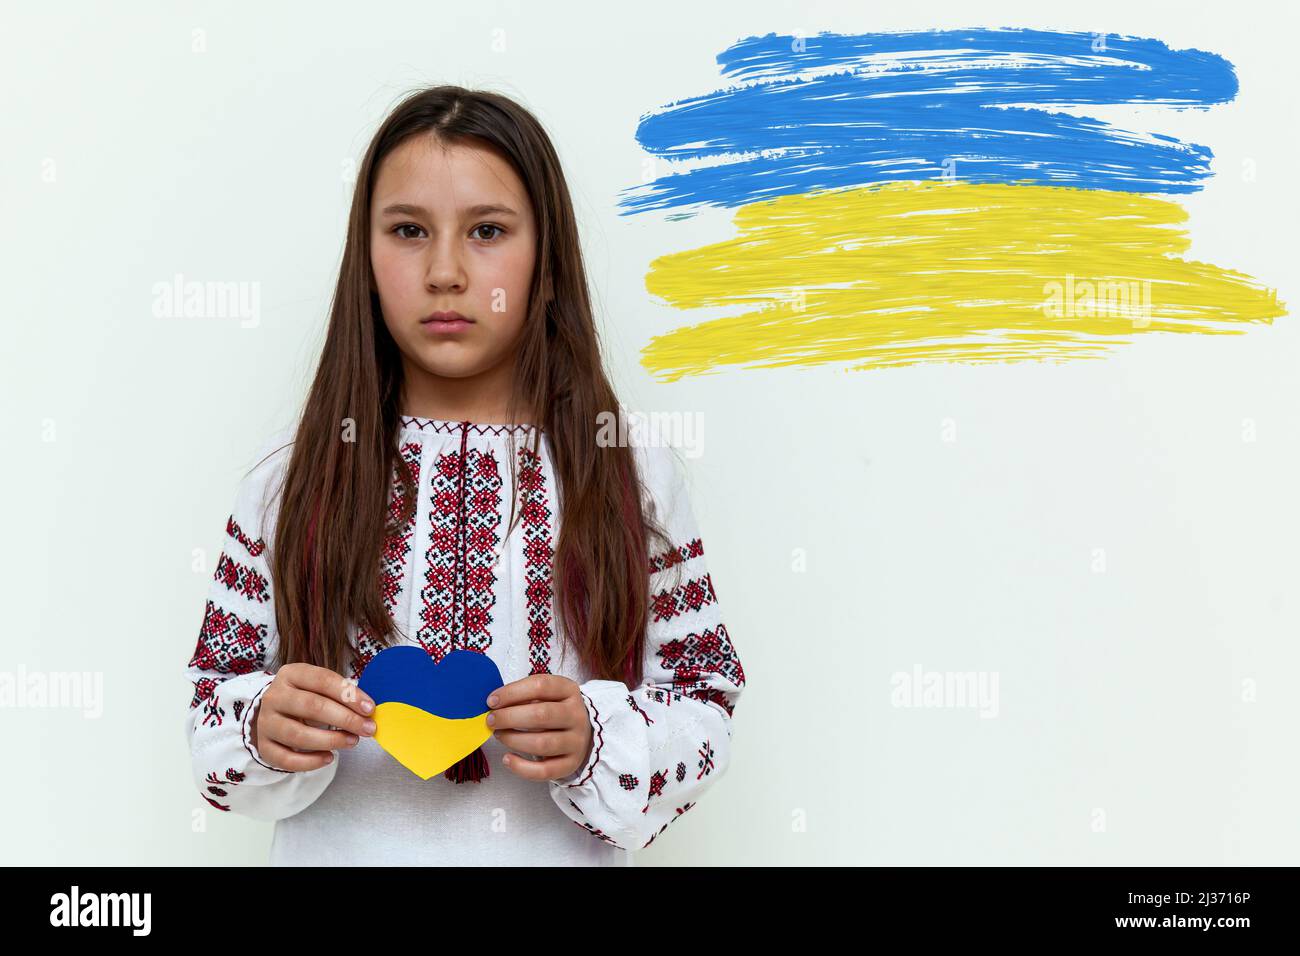 Una chica con un vestido bordado se levanta contra una pared blanca, sosteniendo un corazón pintado de azul y amarillo. La chica protesta contra la guerra y muestra lo Foto de stock